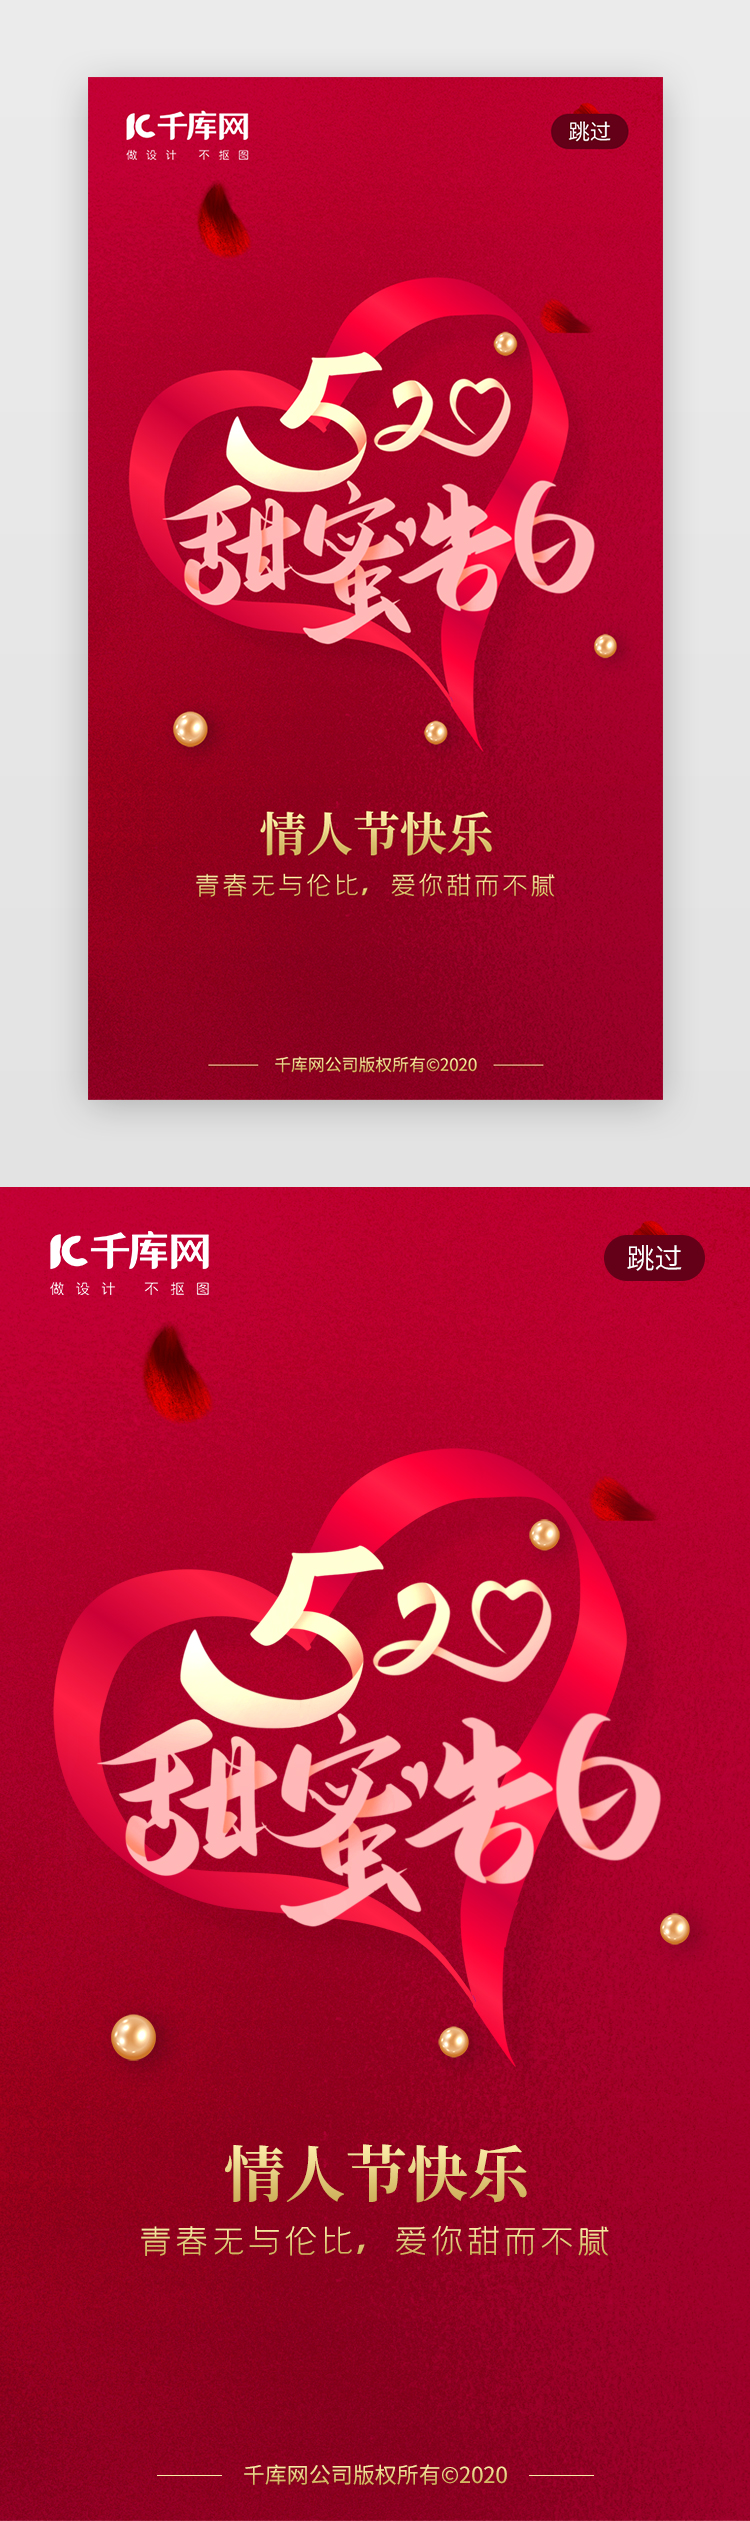 520甜蜜告白日app闪屏创意红色飘带图片